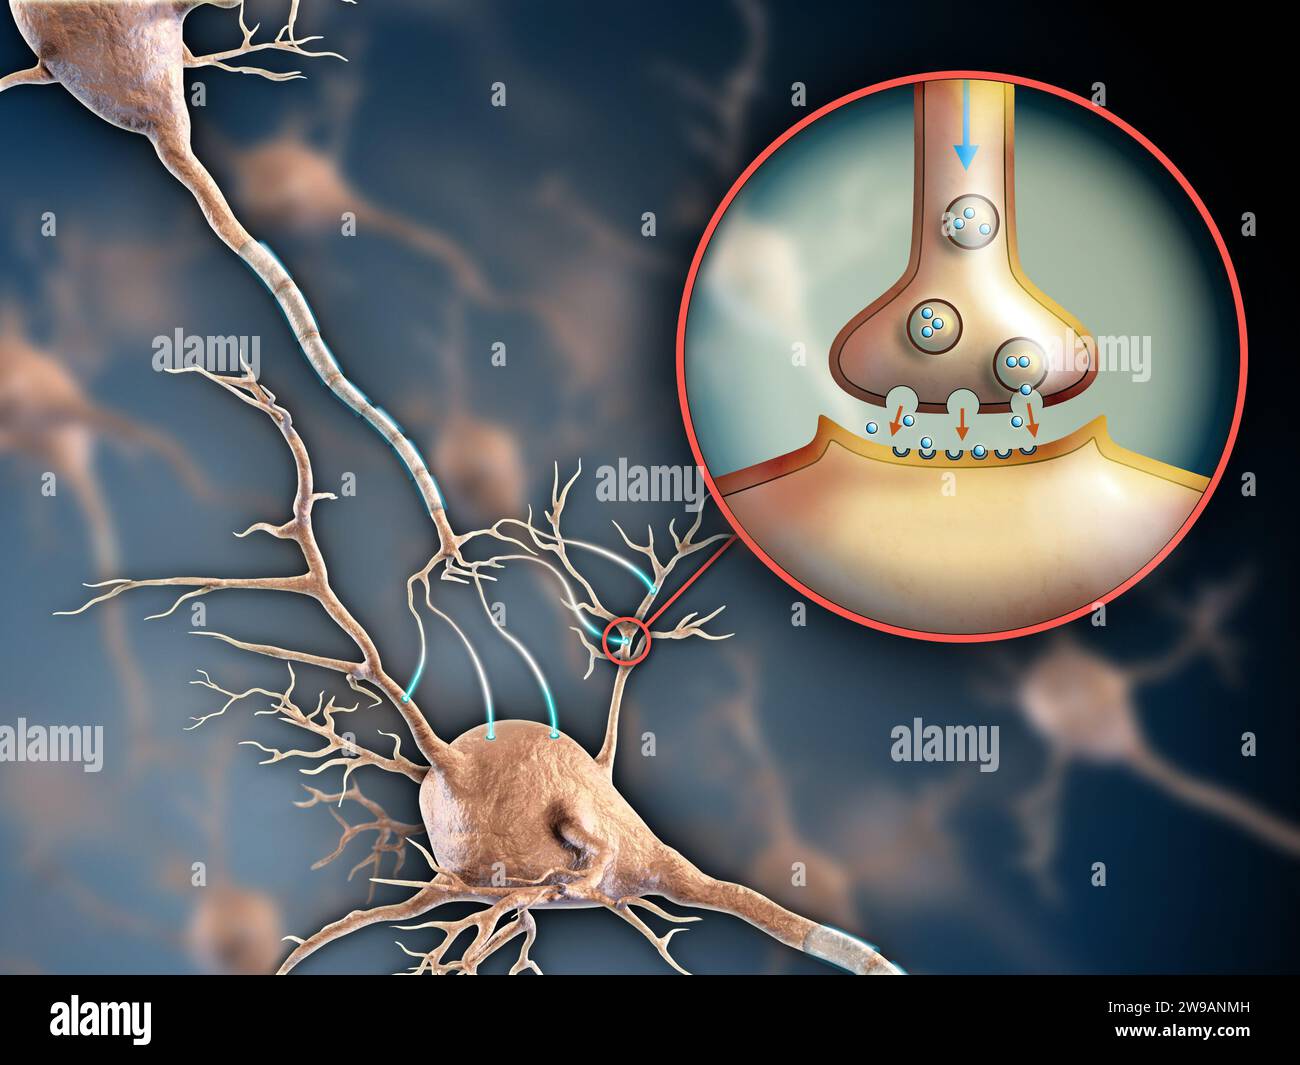 Due neuroni che si collegano mediante trasmissioni elettrochimiche. Illustrazione digitale. Foto Stock